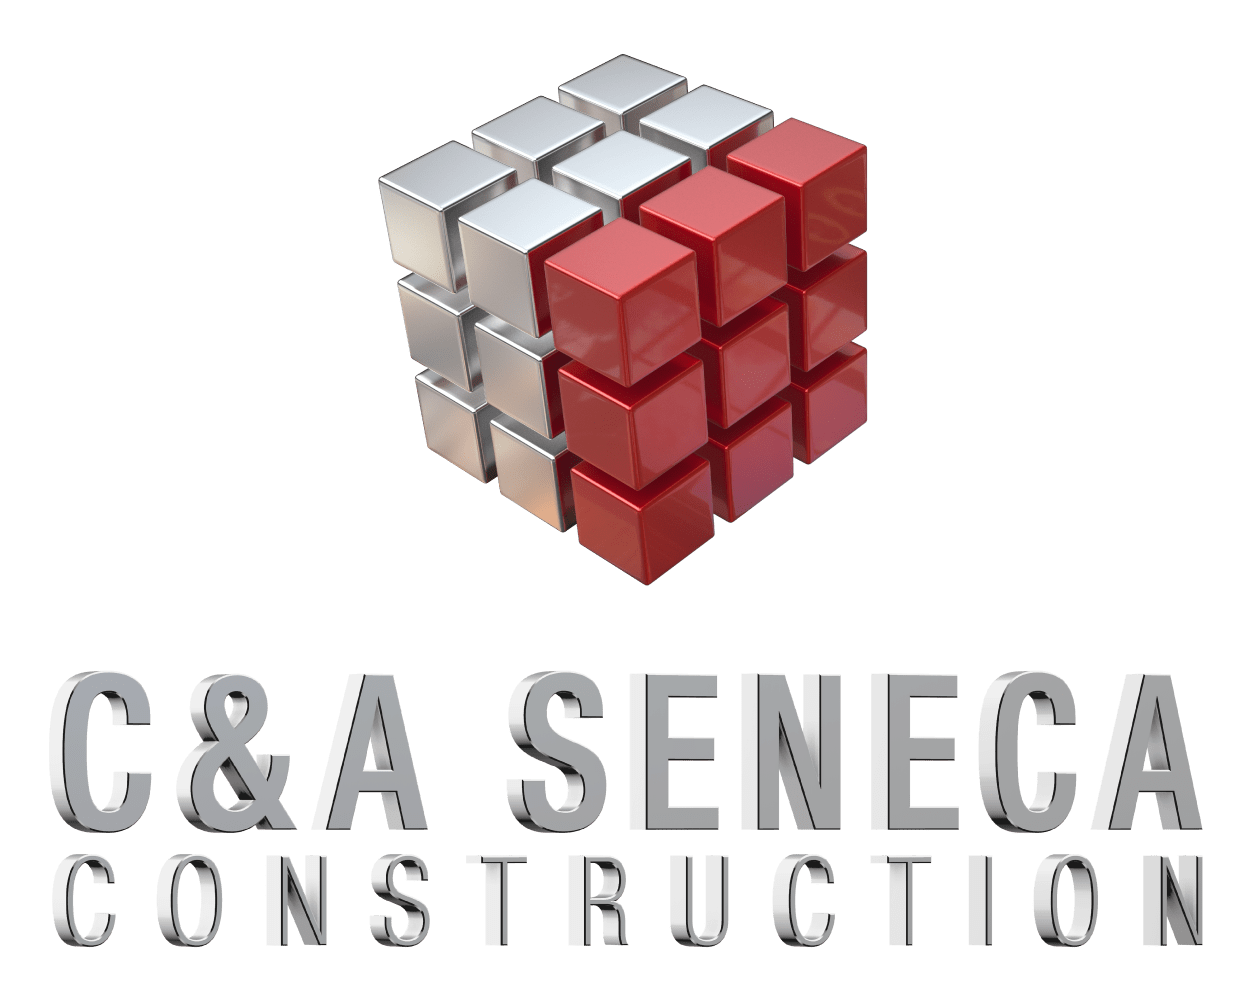 C&A Seneca Construction 669